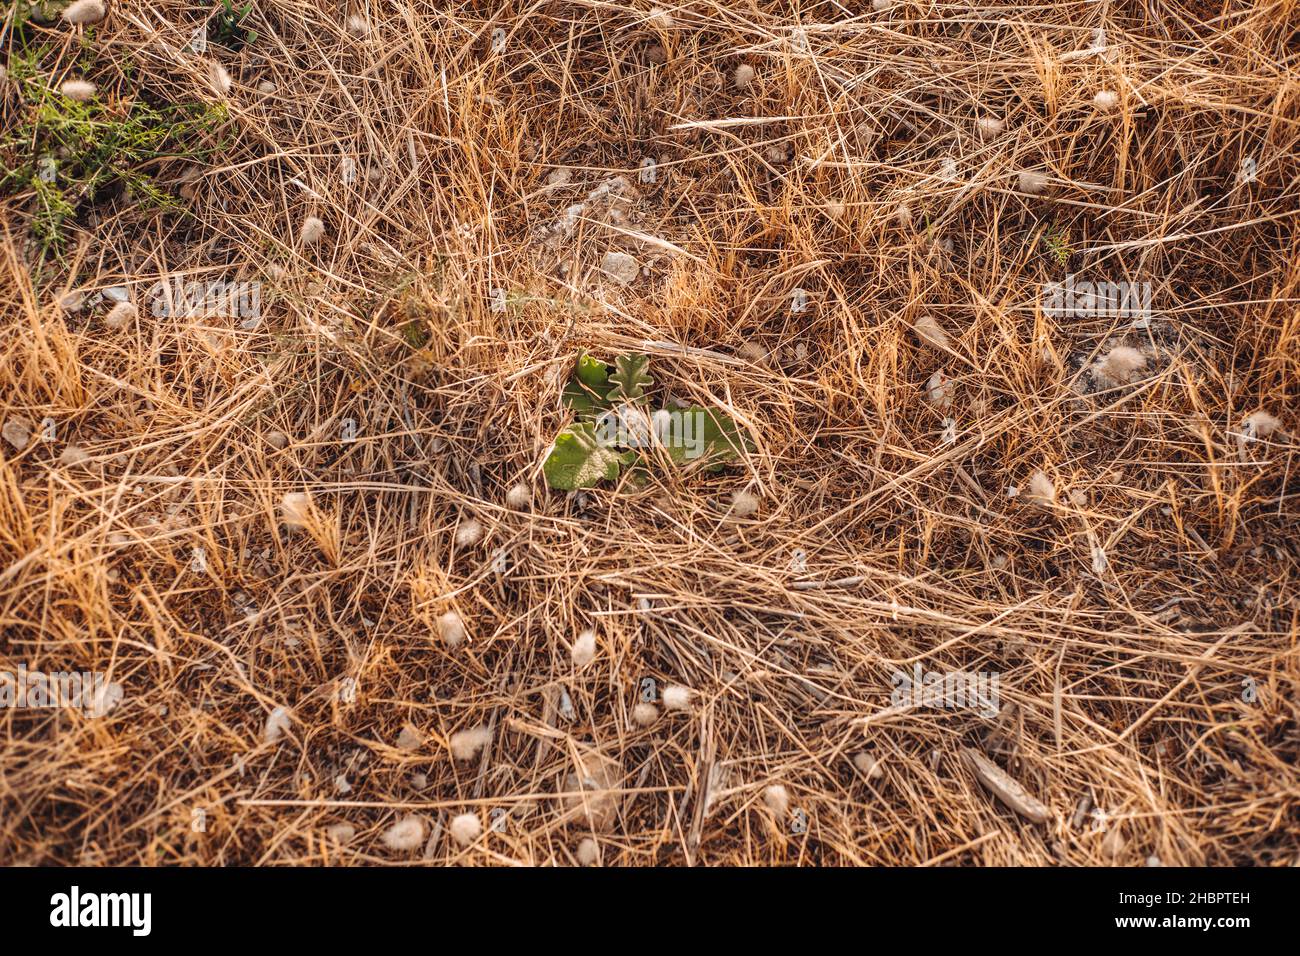 Dried plants covering the countryside in Gagliano del Capo, Puglia region, Italy Stock Photo